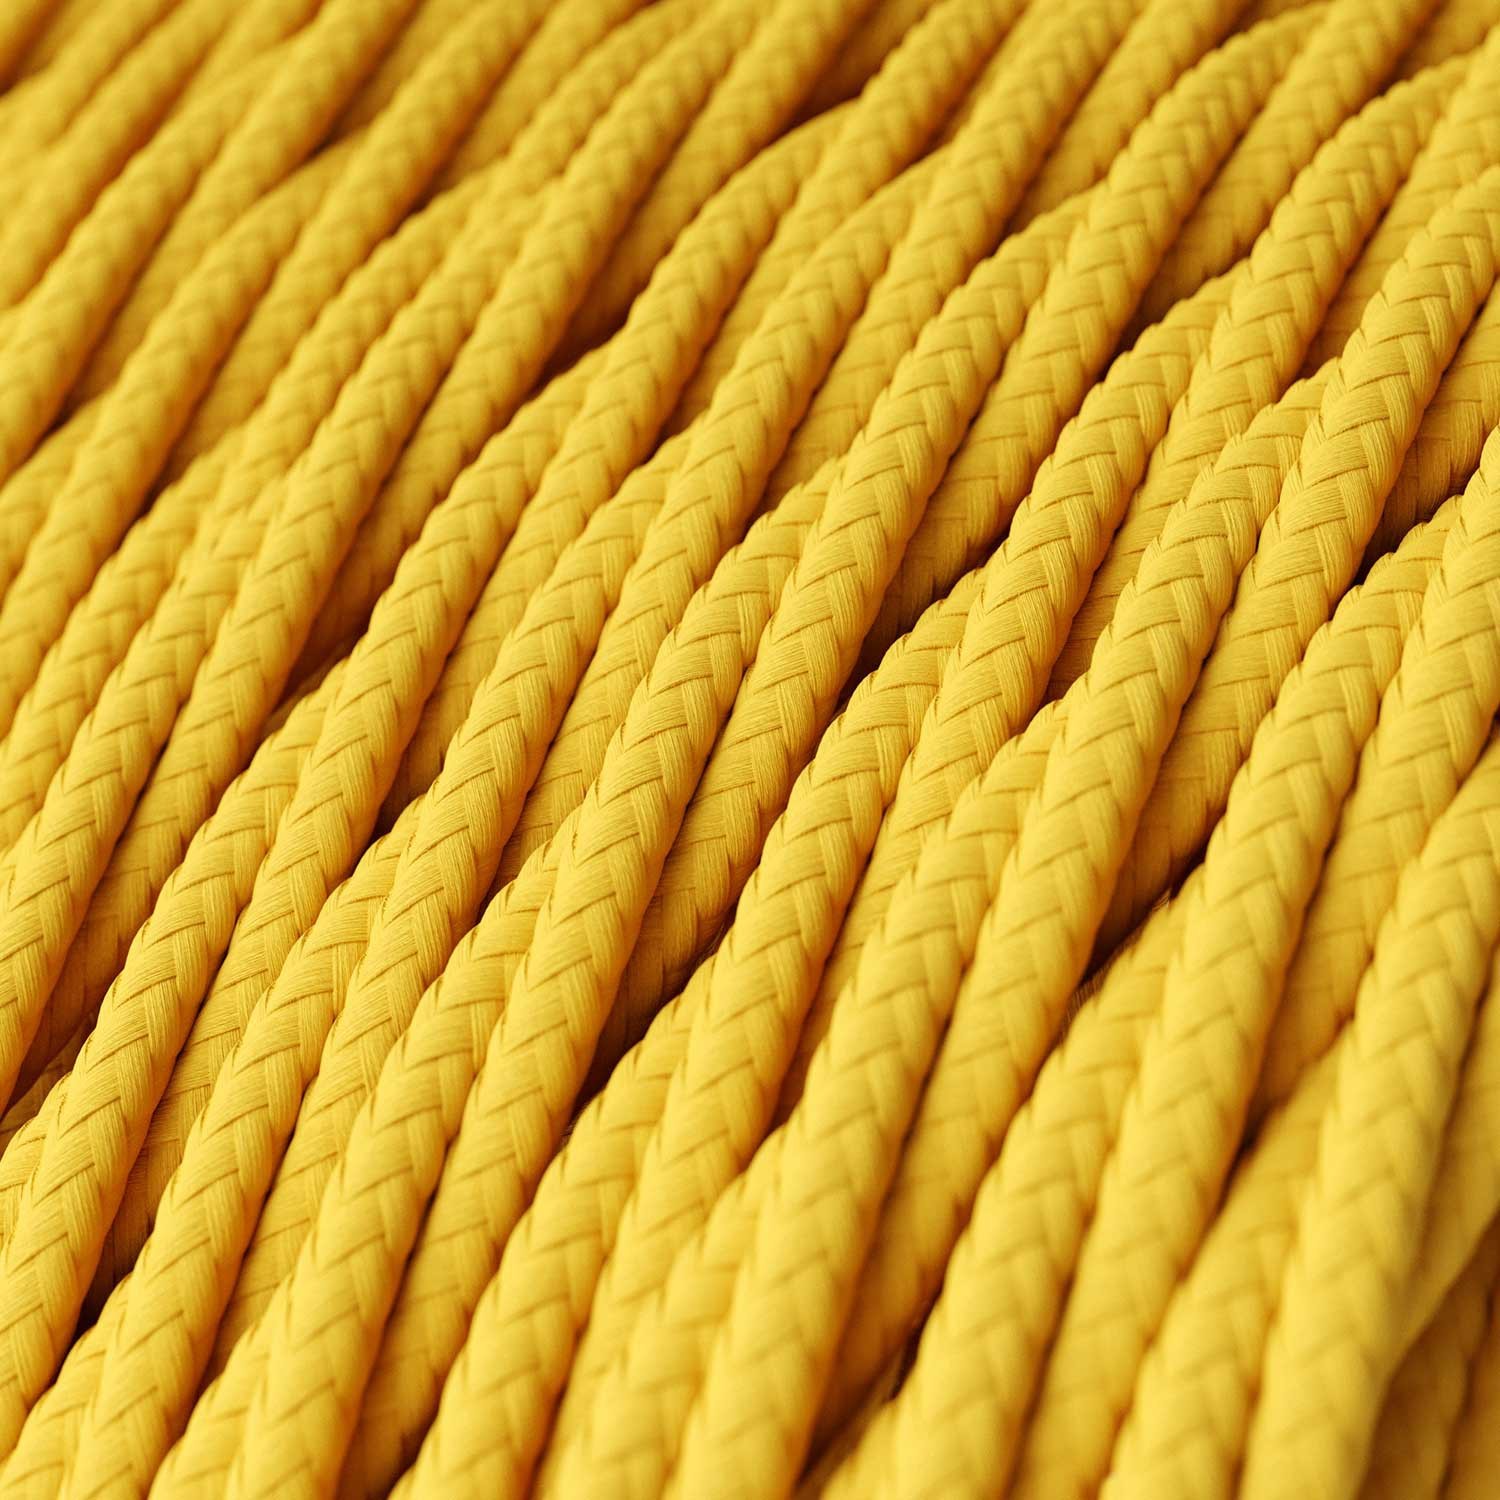 Elektrisches Kabel geflochten überzogen mit Textil-Seideneffekt Einfarbig Gelb TM10